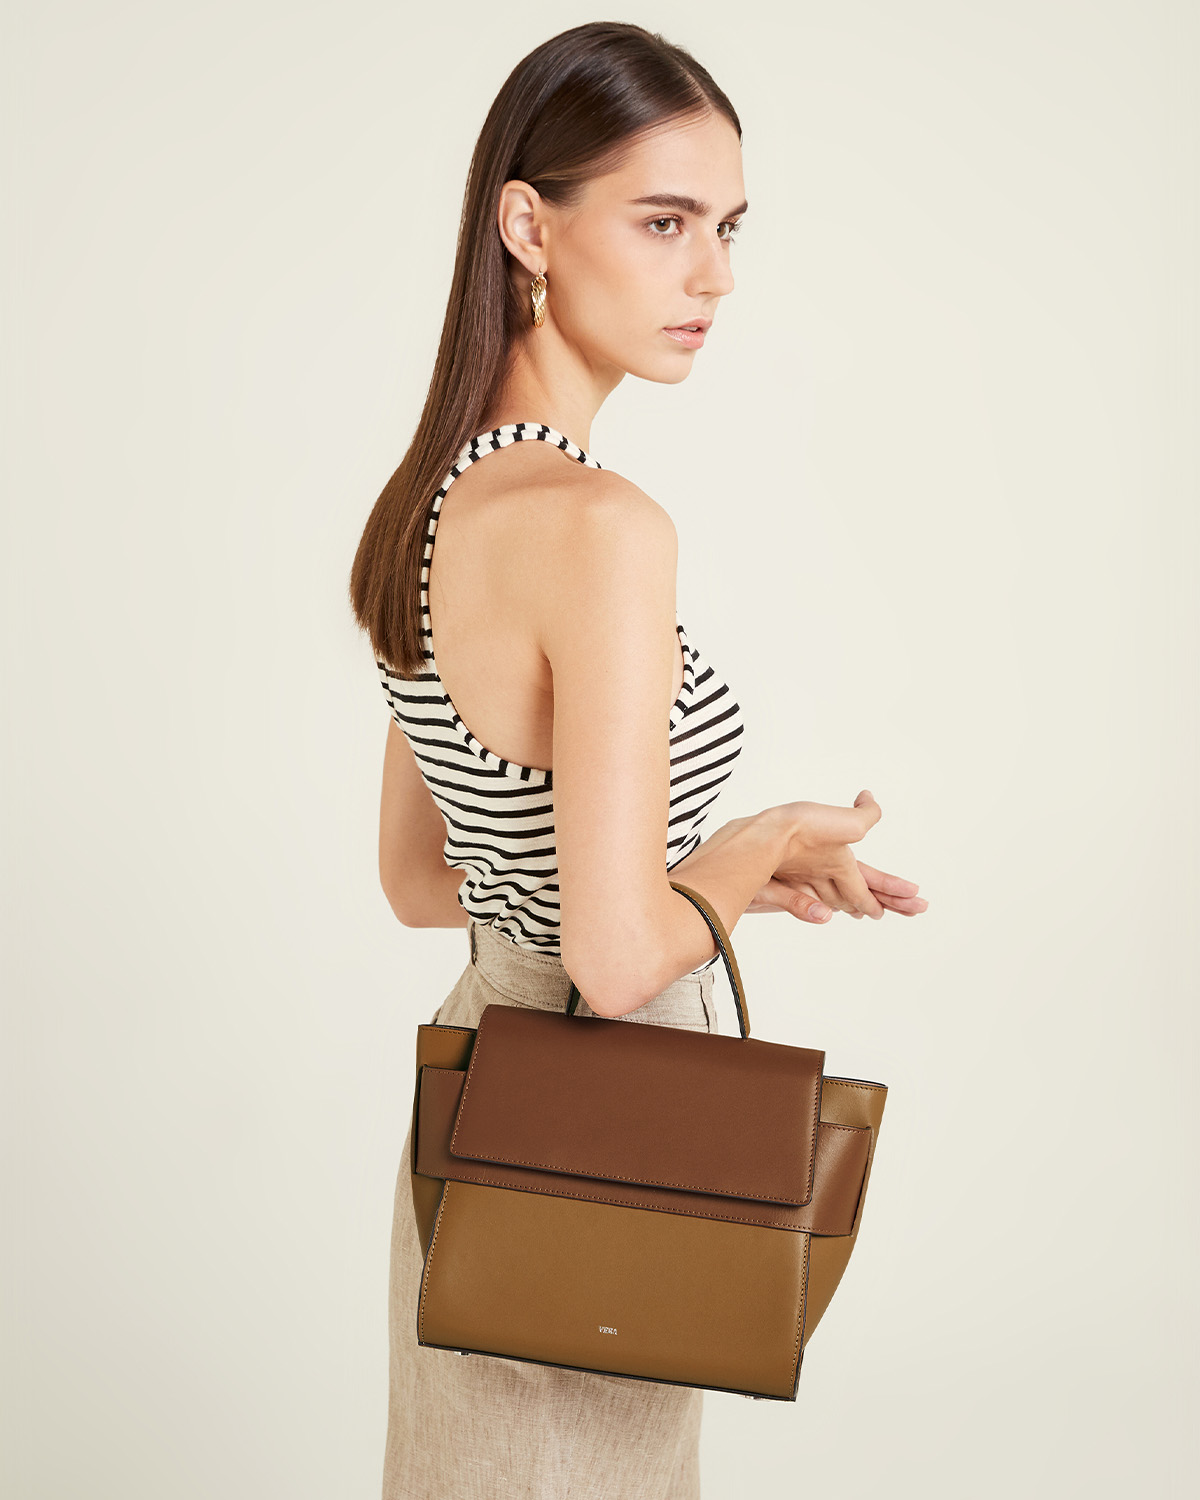 กระเป๋าถือหนังแท้ VERA Margo Leather Handbag, Size 24 สี Caramel